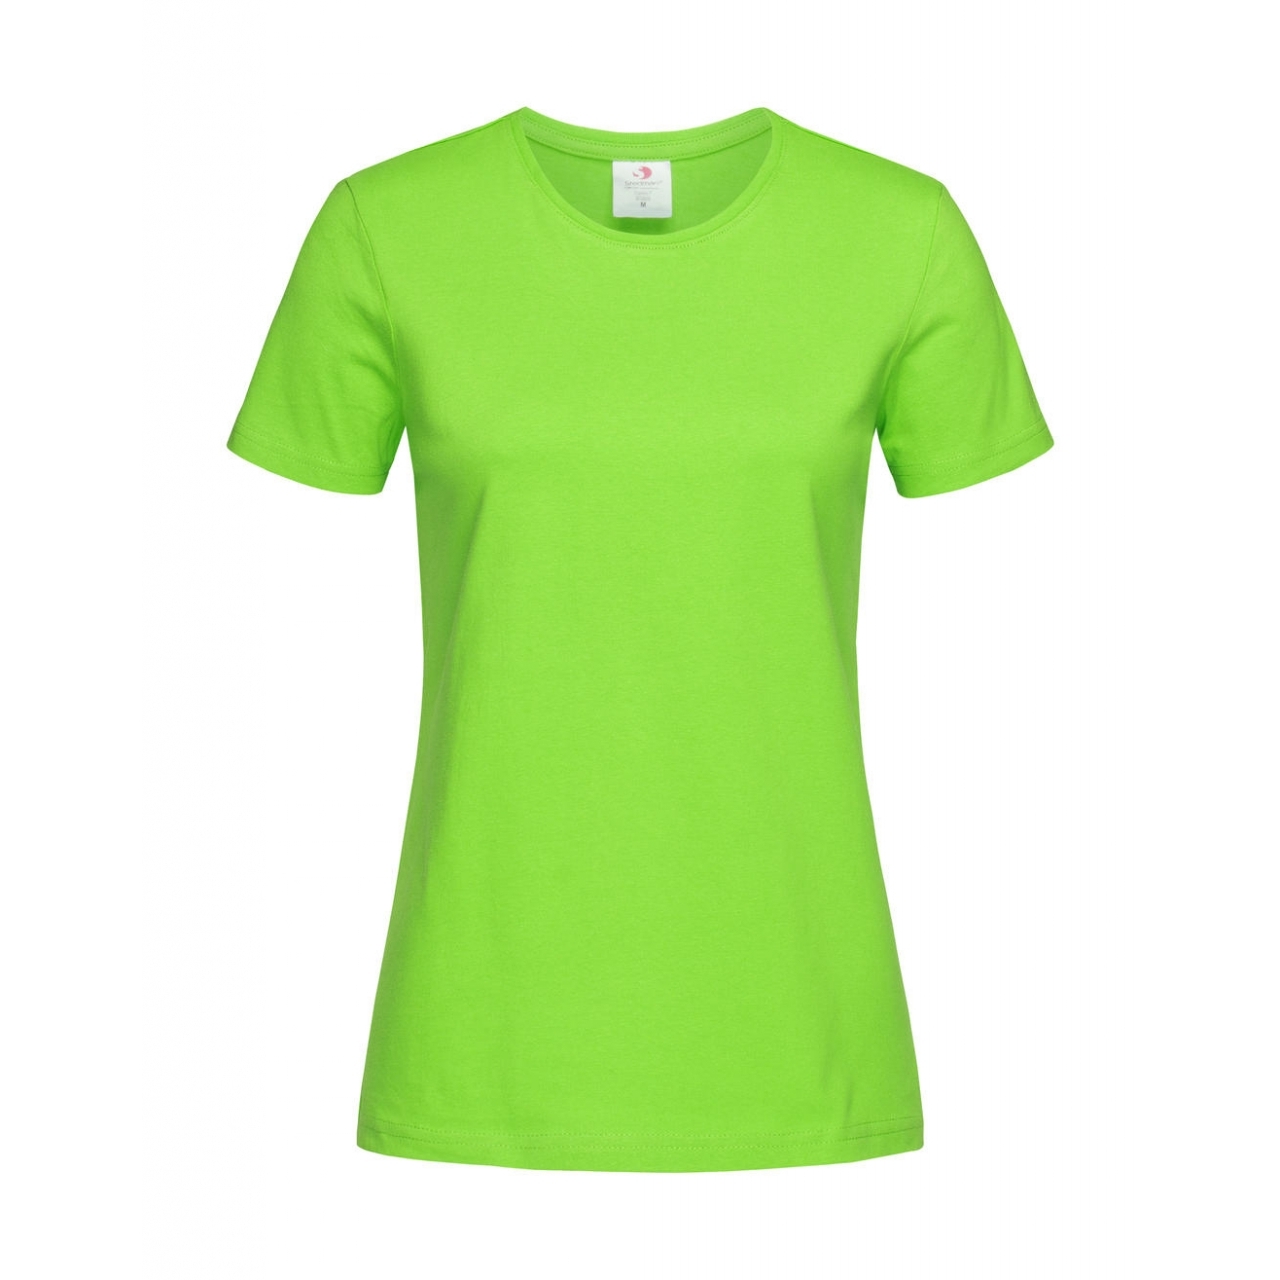 Tričko dámské Stedman Fitted s kulatým výstřihem - světle zelené, S